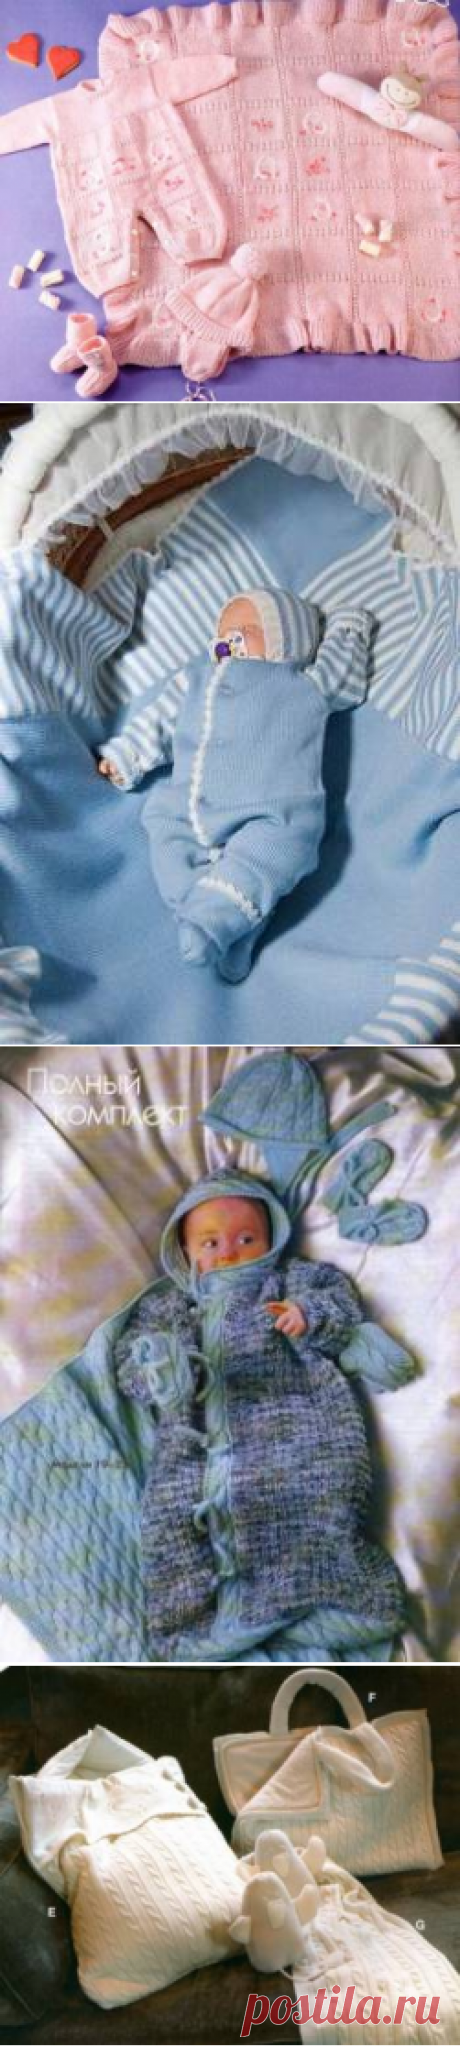 Наборы на выписку- вяжем самостоятельно - Вязание для новорожденных - Последние схемы и модели для крючка и спиц - Вязание для души